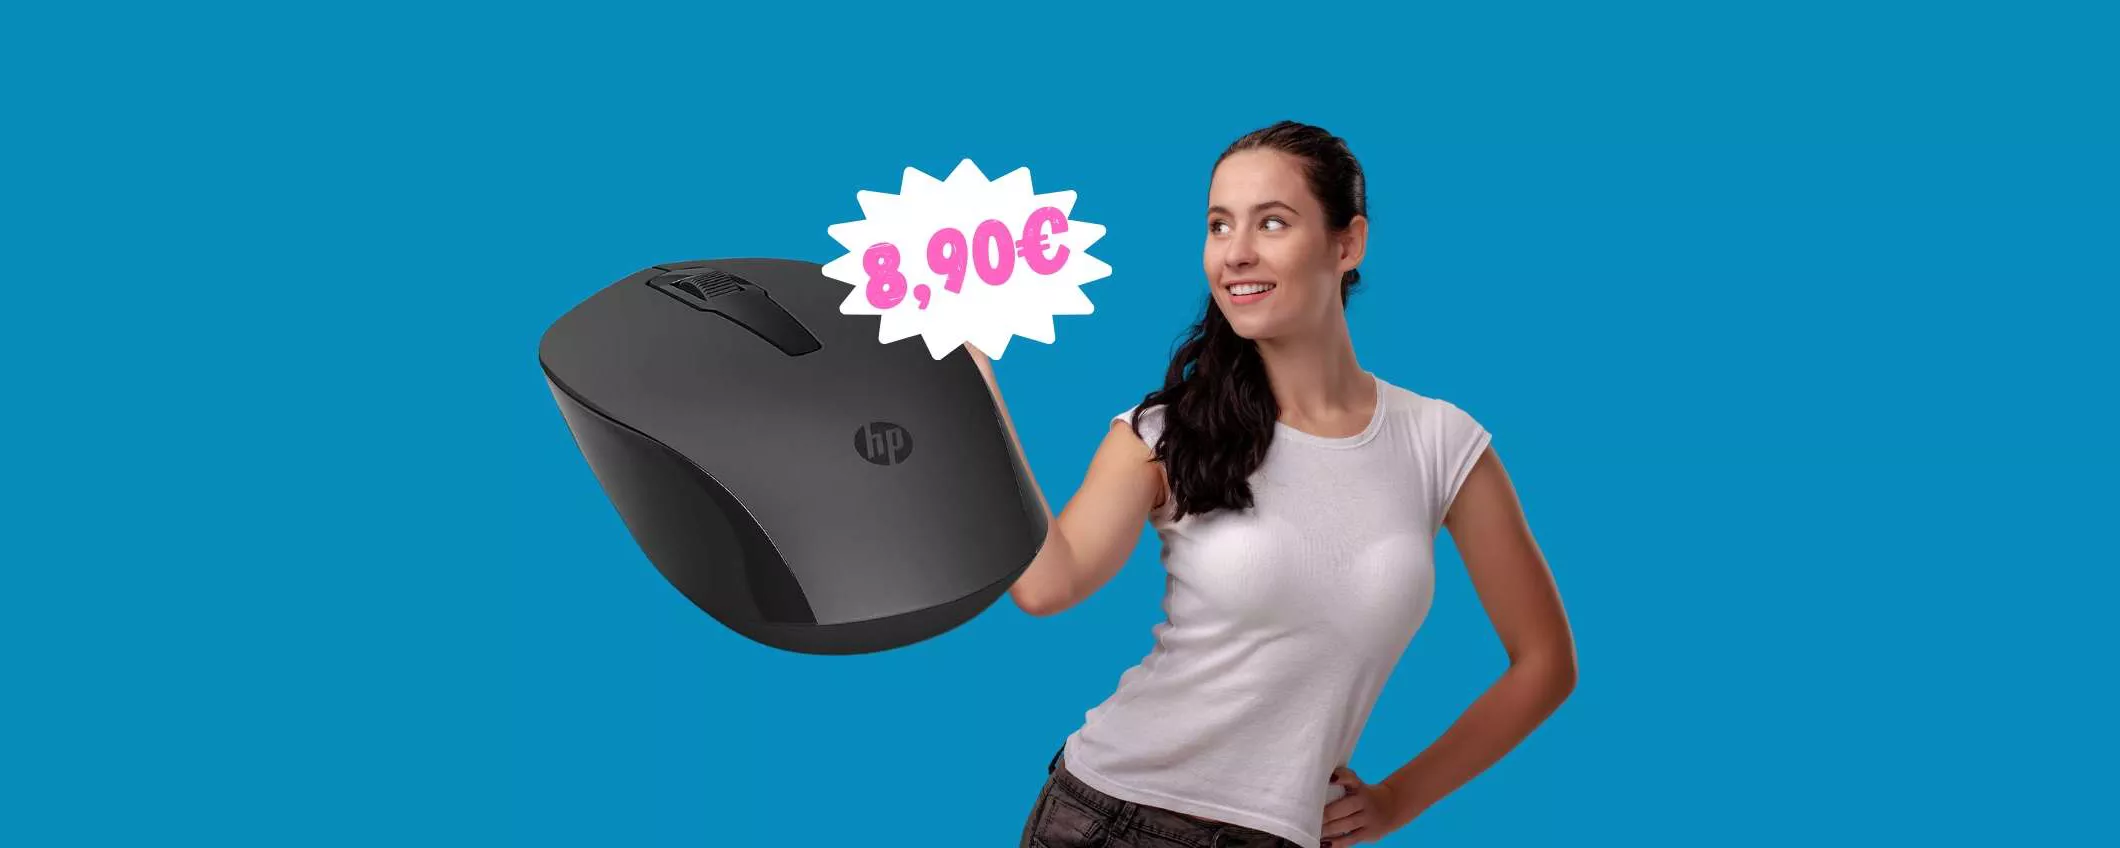 Mouse wireless HP con ricevitore a 8,90€: ROBA da MATTI